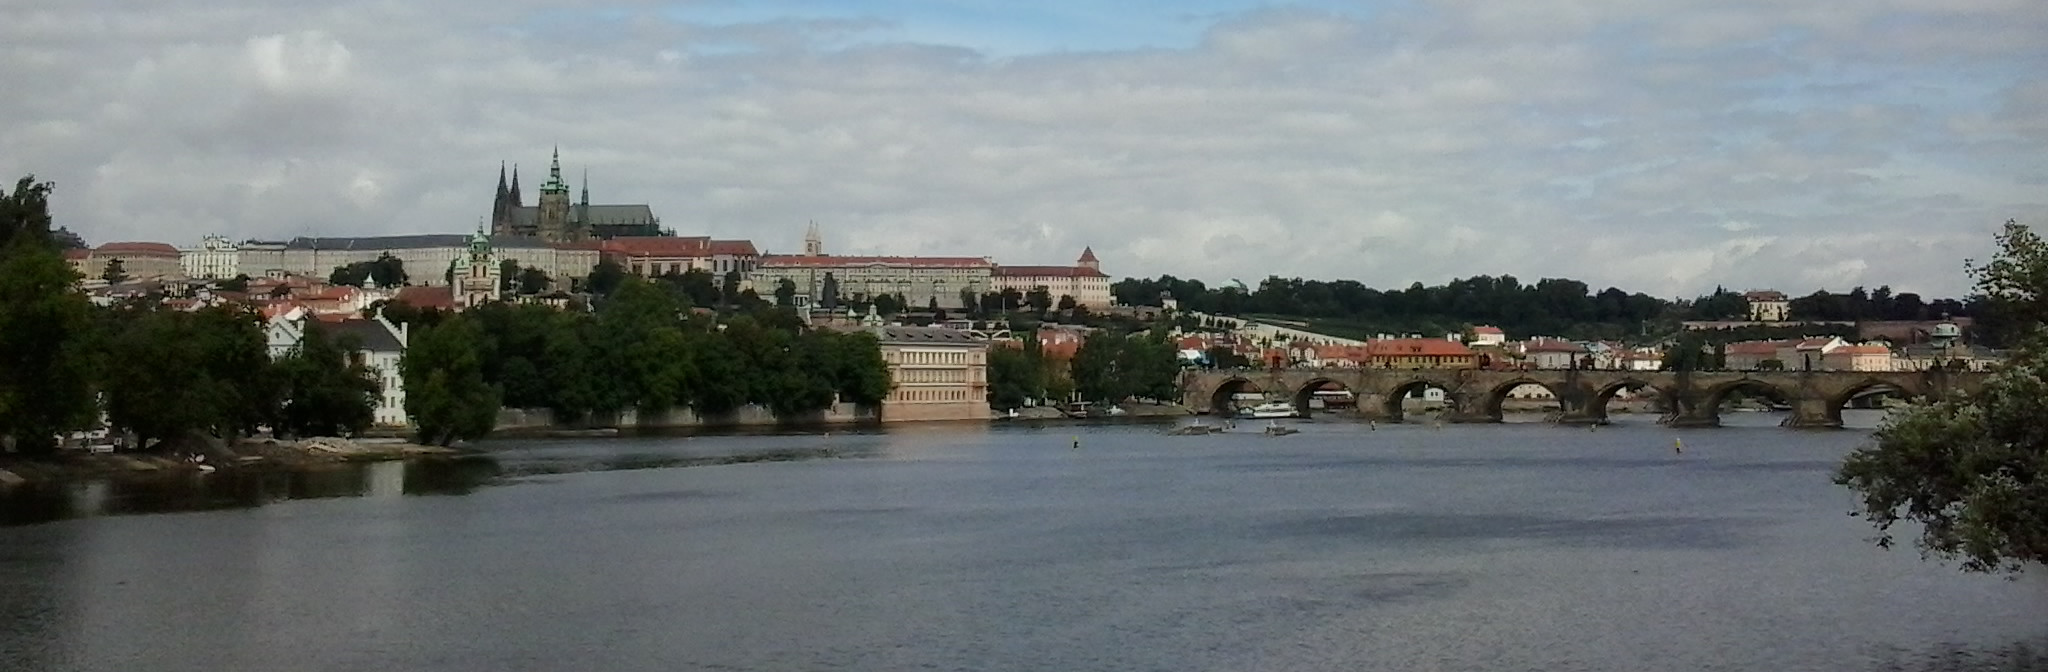 布拉格城堡和查尔斯桥